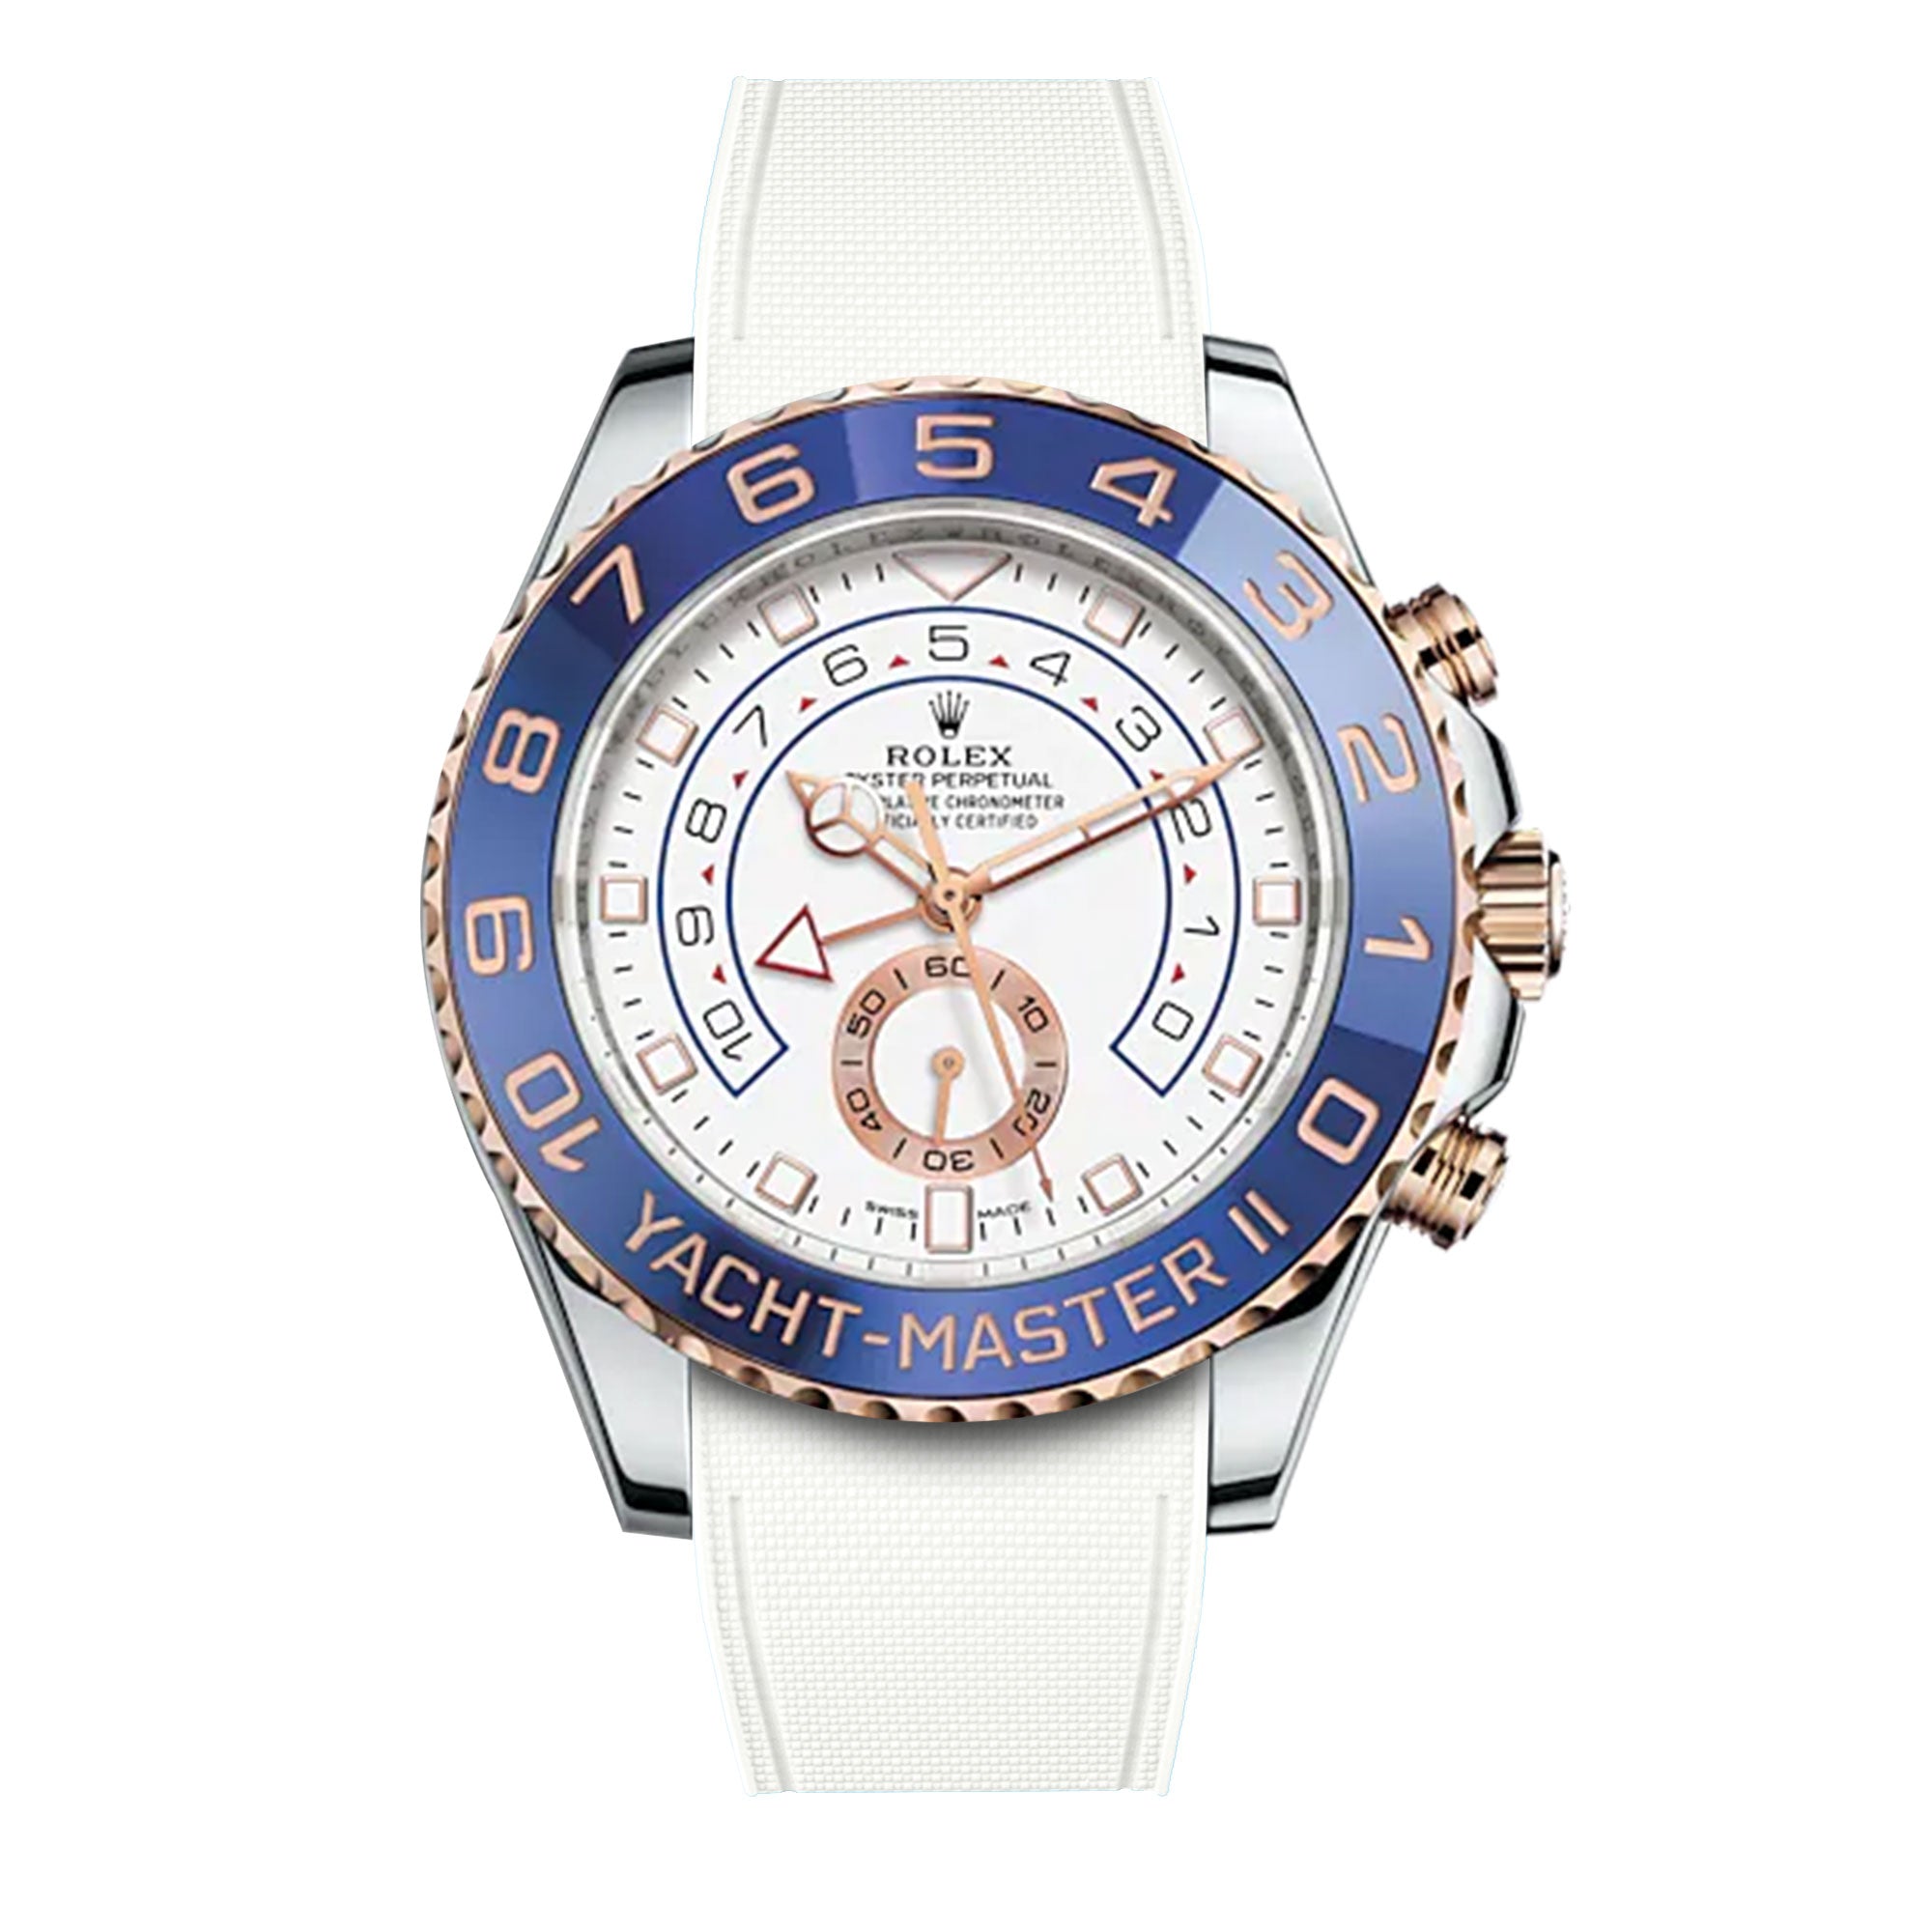 Rolex – R strap Premium - Bracelet-montre caoutchouc motif cordura pour Yachtmaster II 44mm  & bracelet Oyster